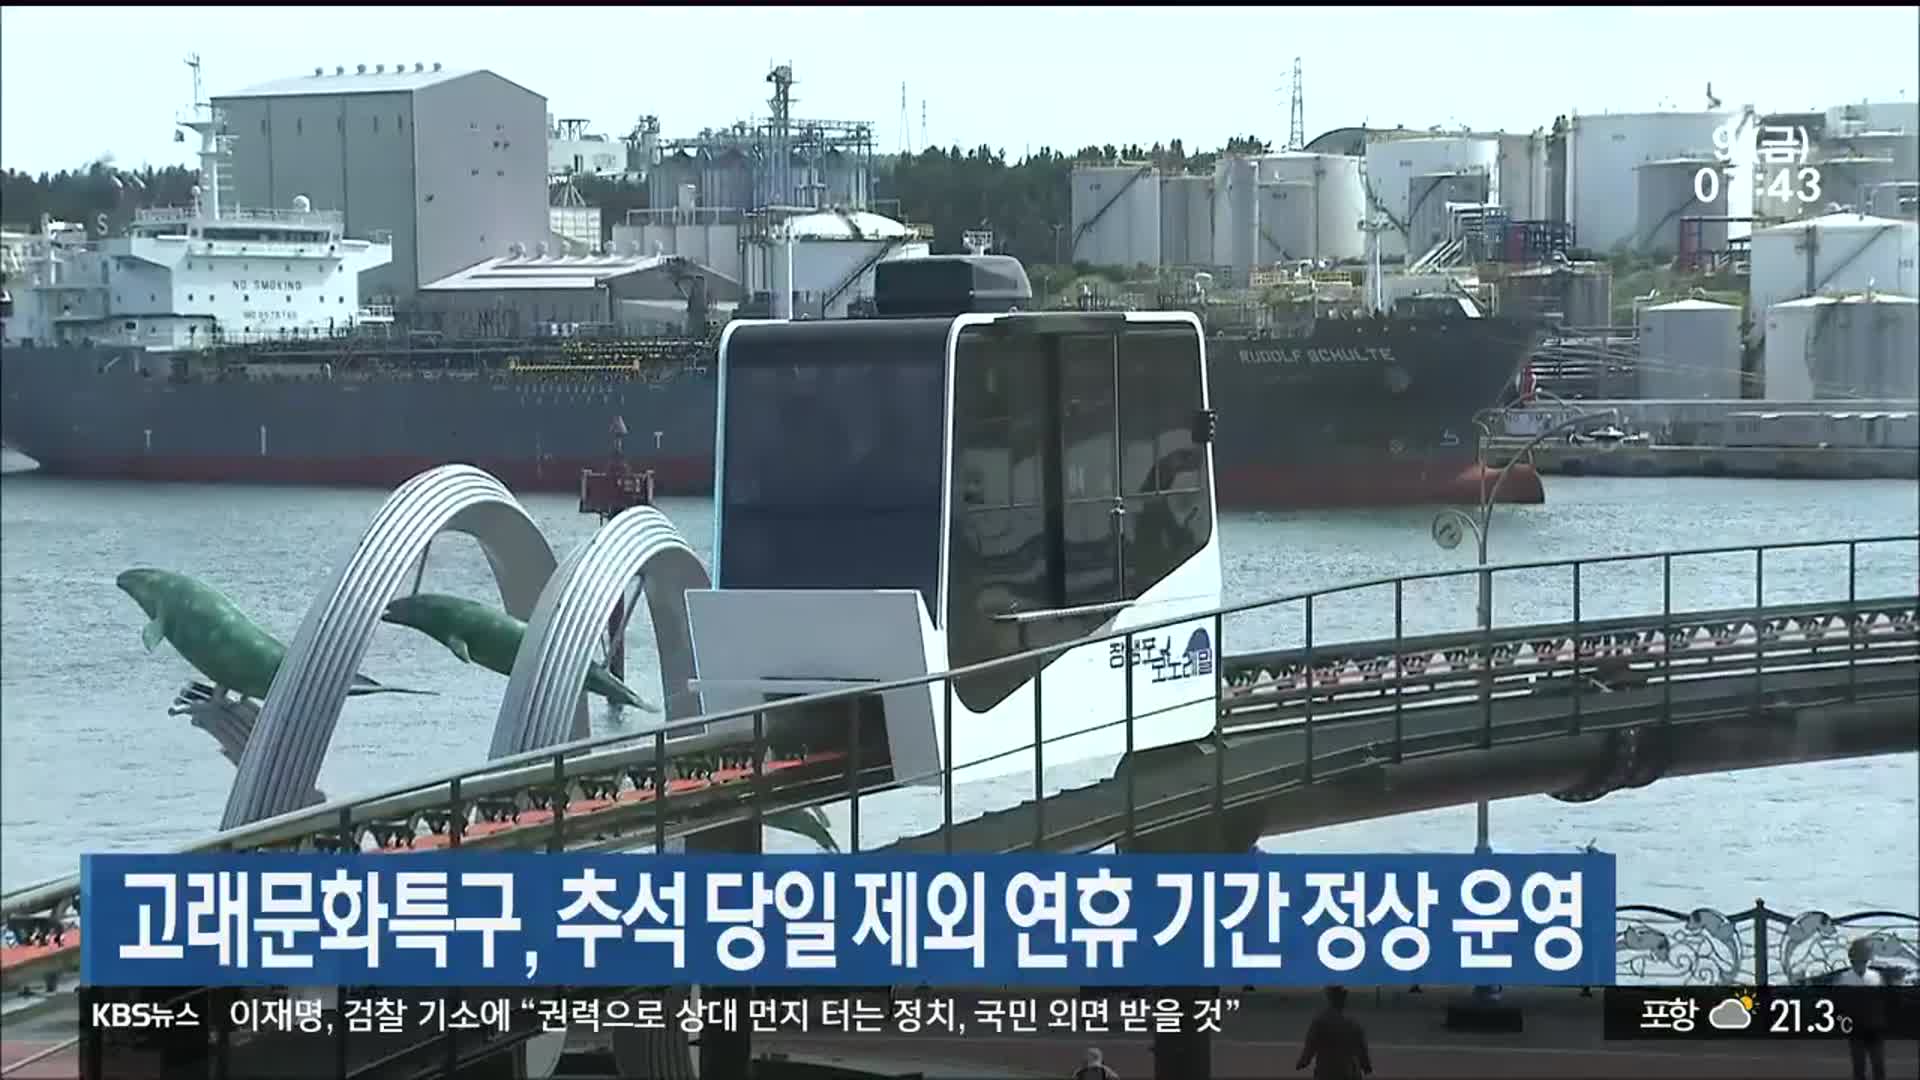 고래문화특구, 추석 당일 제외 연휴 기간 정상 운영